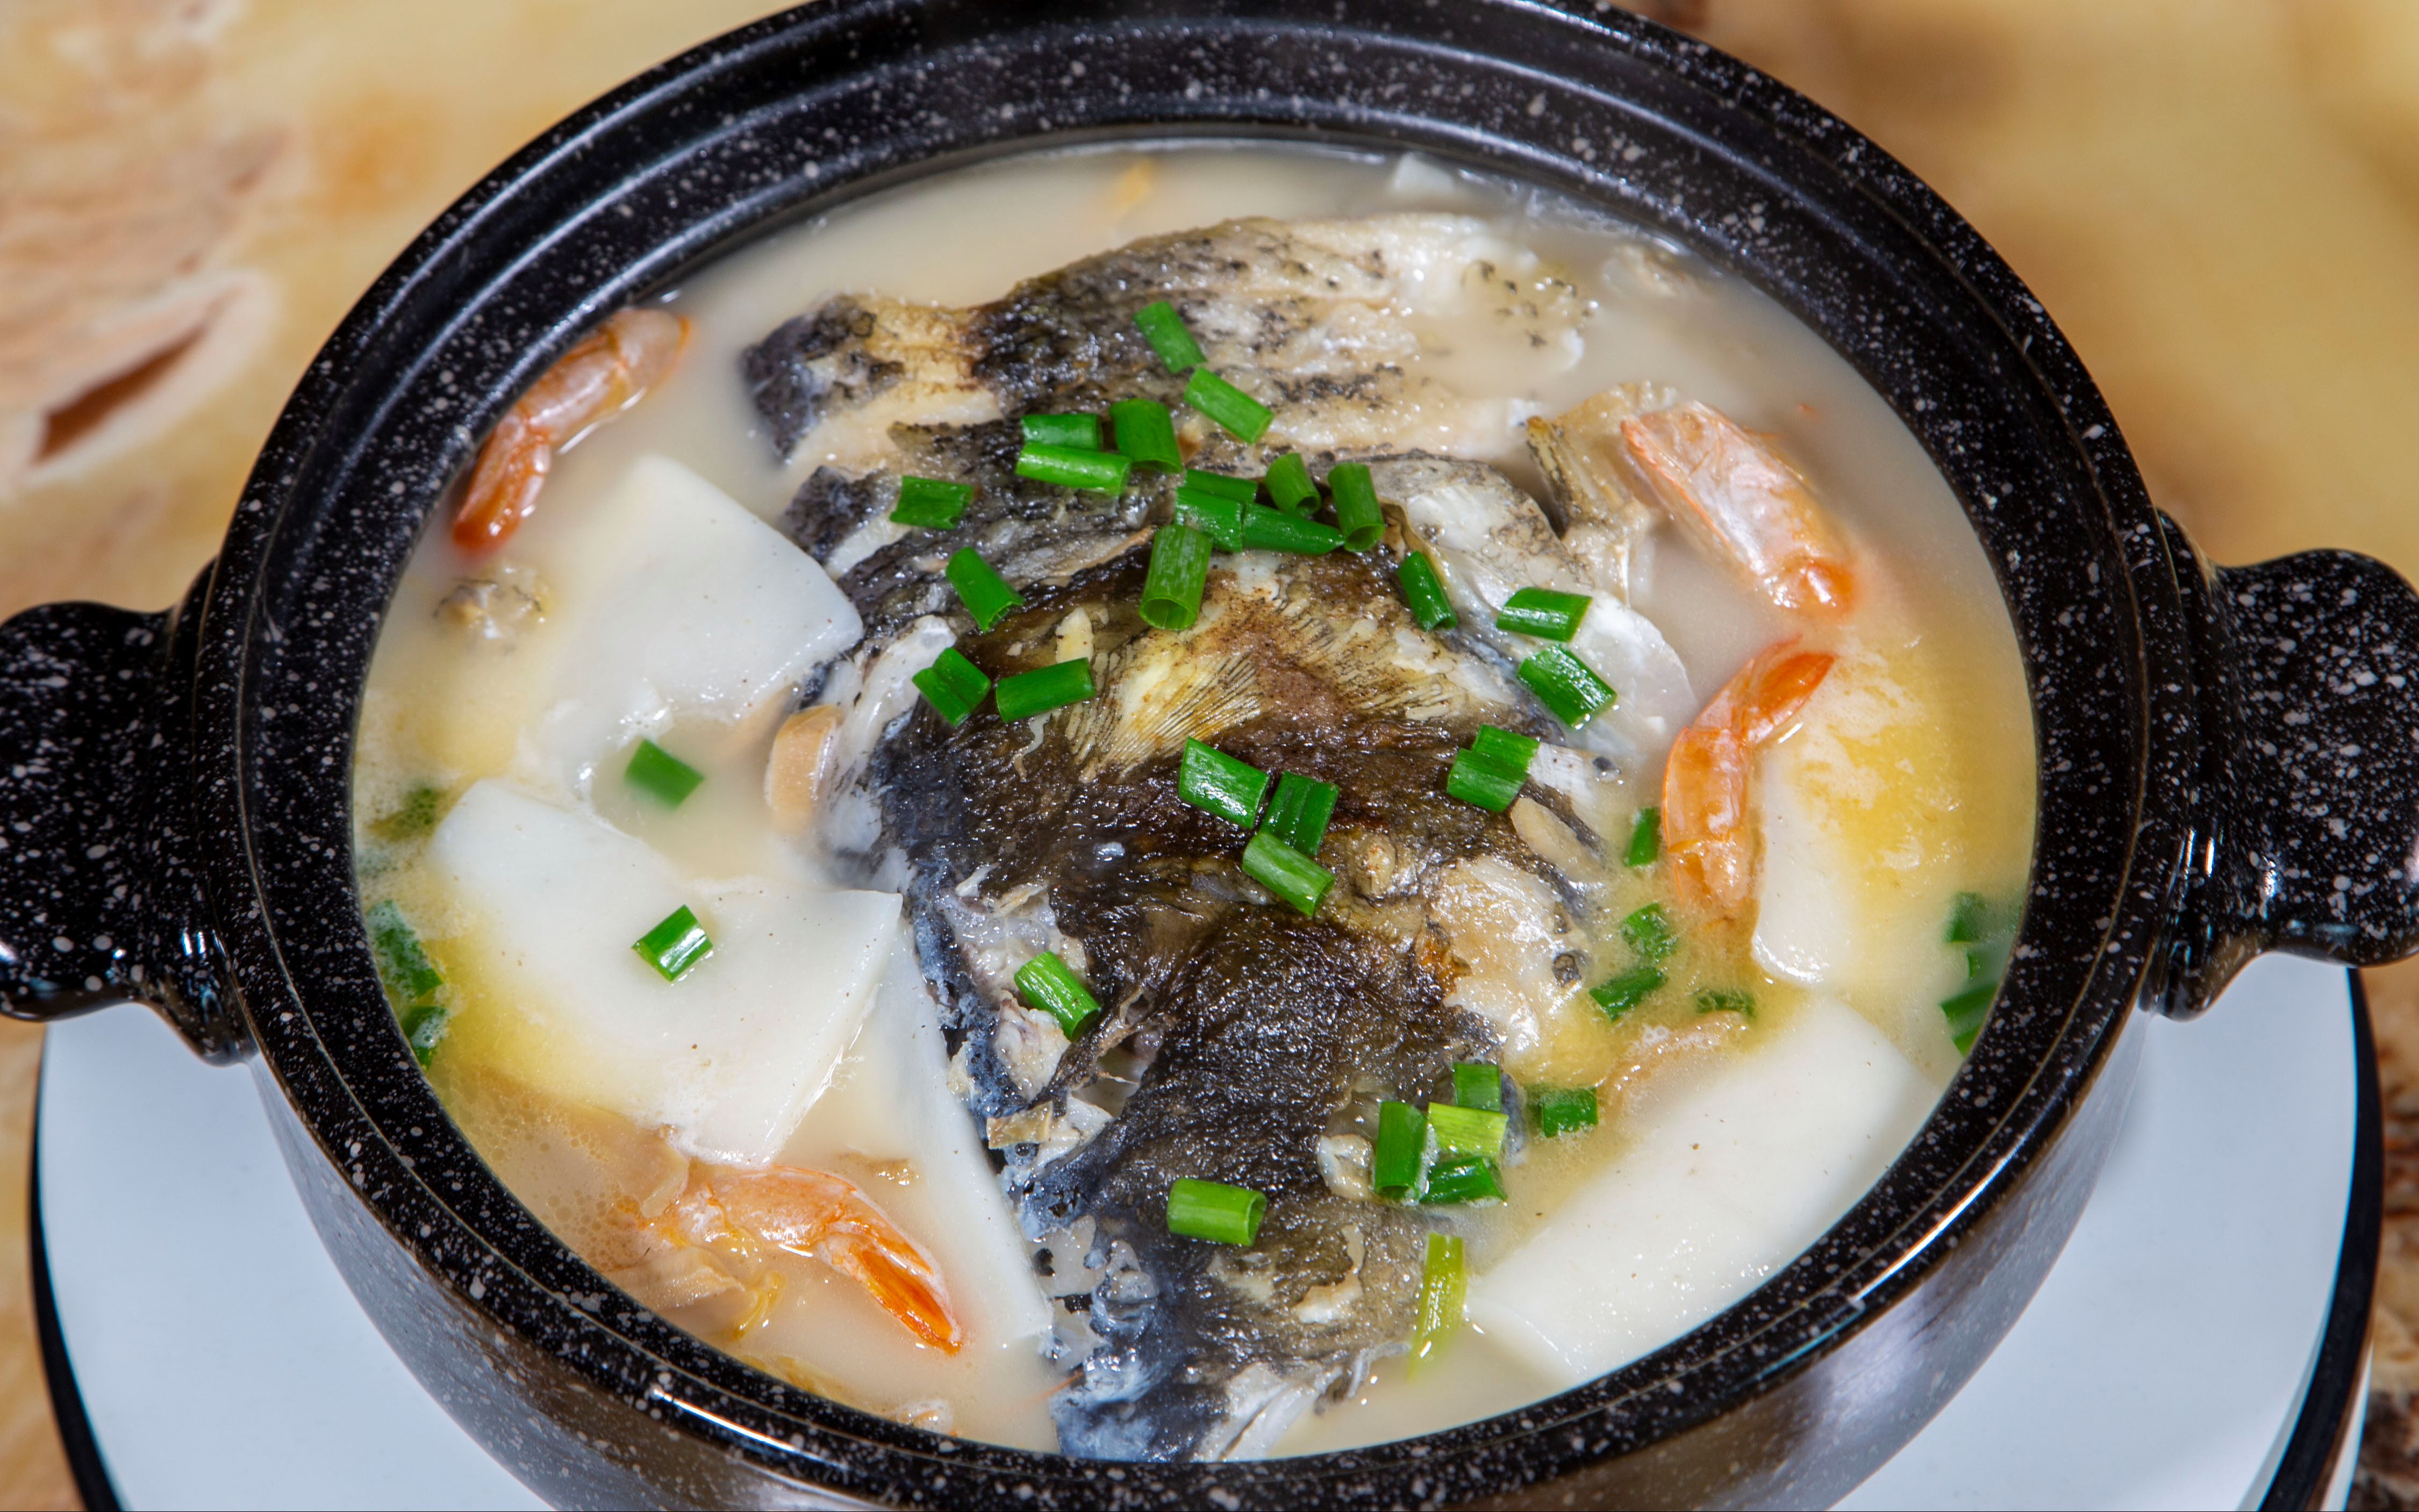 胖头鱼烧汤做法,土烧鱼头煲味道醇厚汤色乳白,家常菜简单又美味